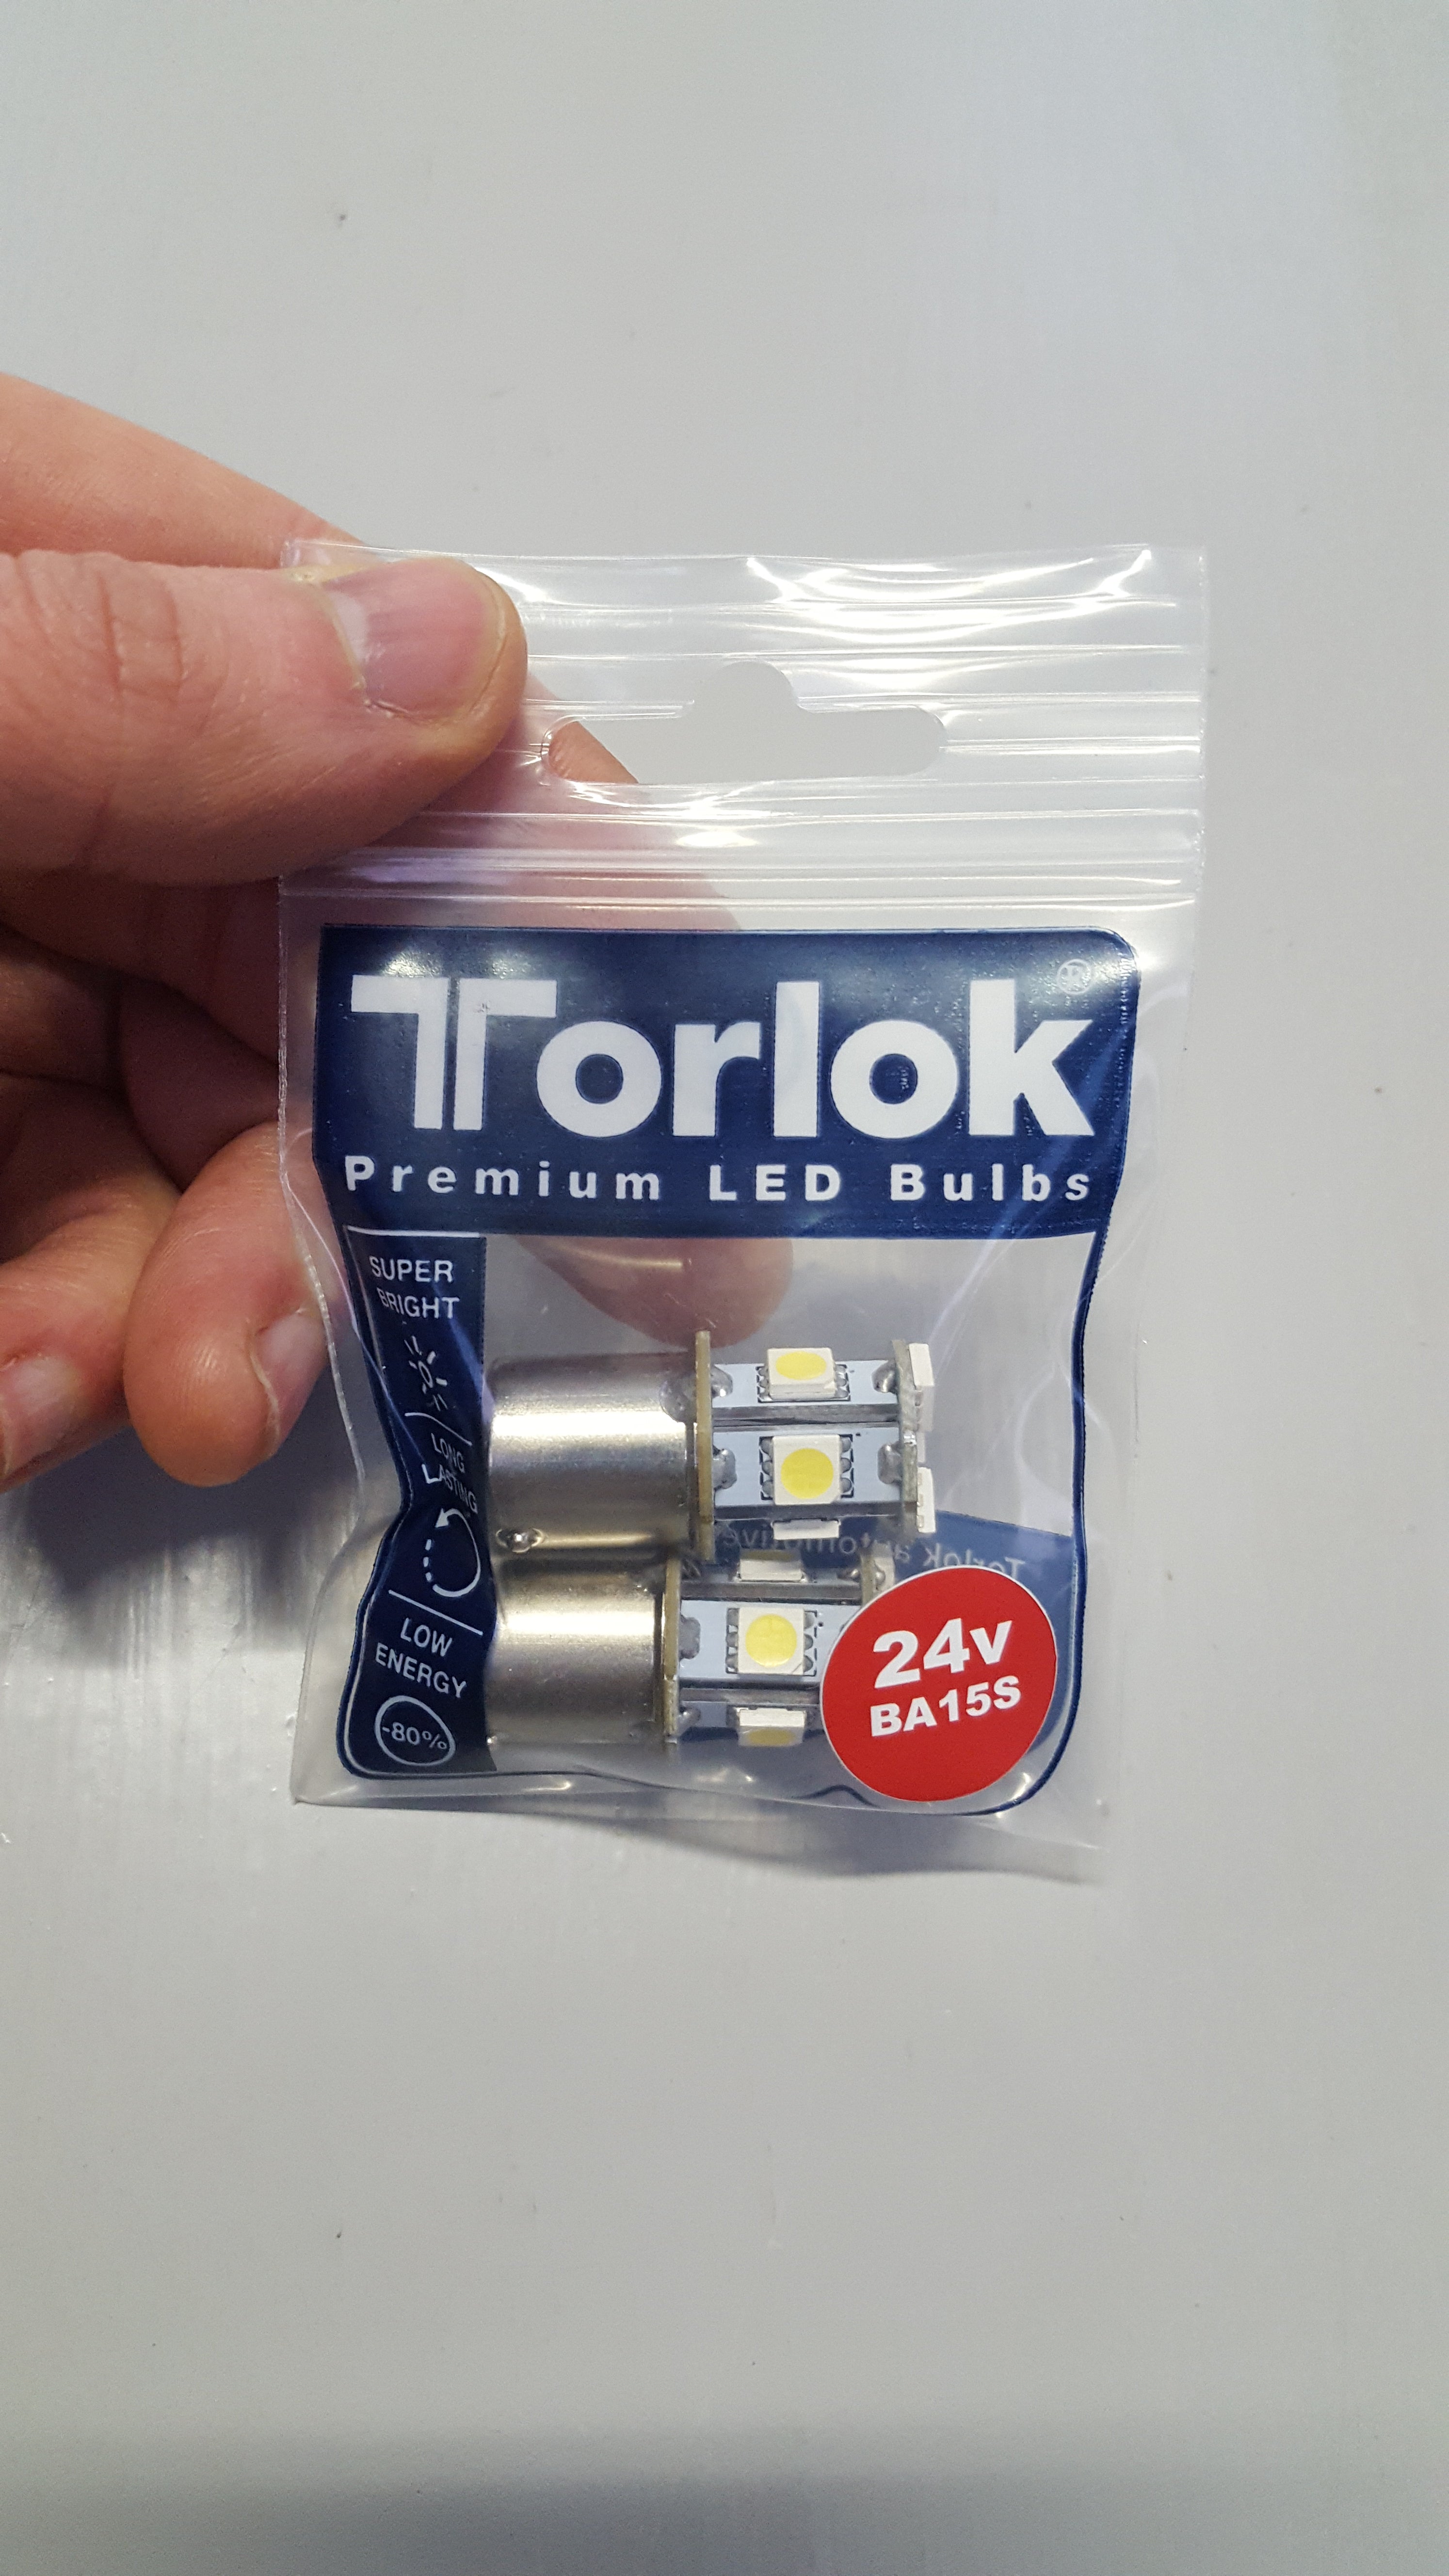 Torlok 24v Premium LED Single Contact Tail Light Bulbs Replaces 149/248, Flasher / Indicator - 24v LED Bulbs - LED Bulb